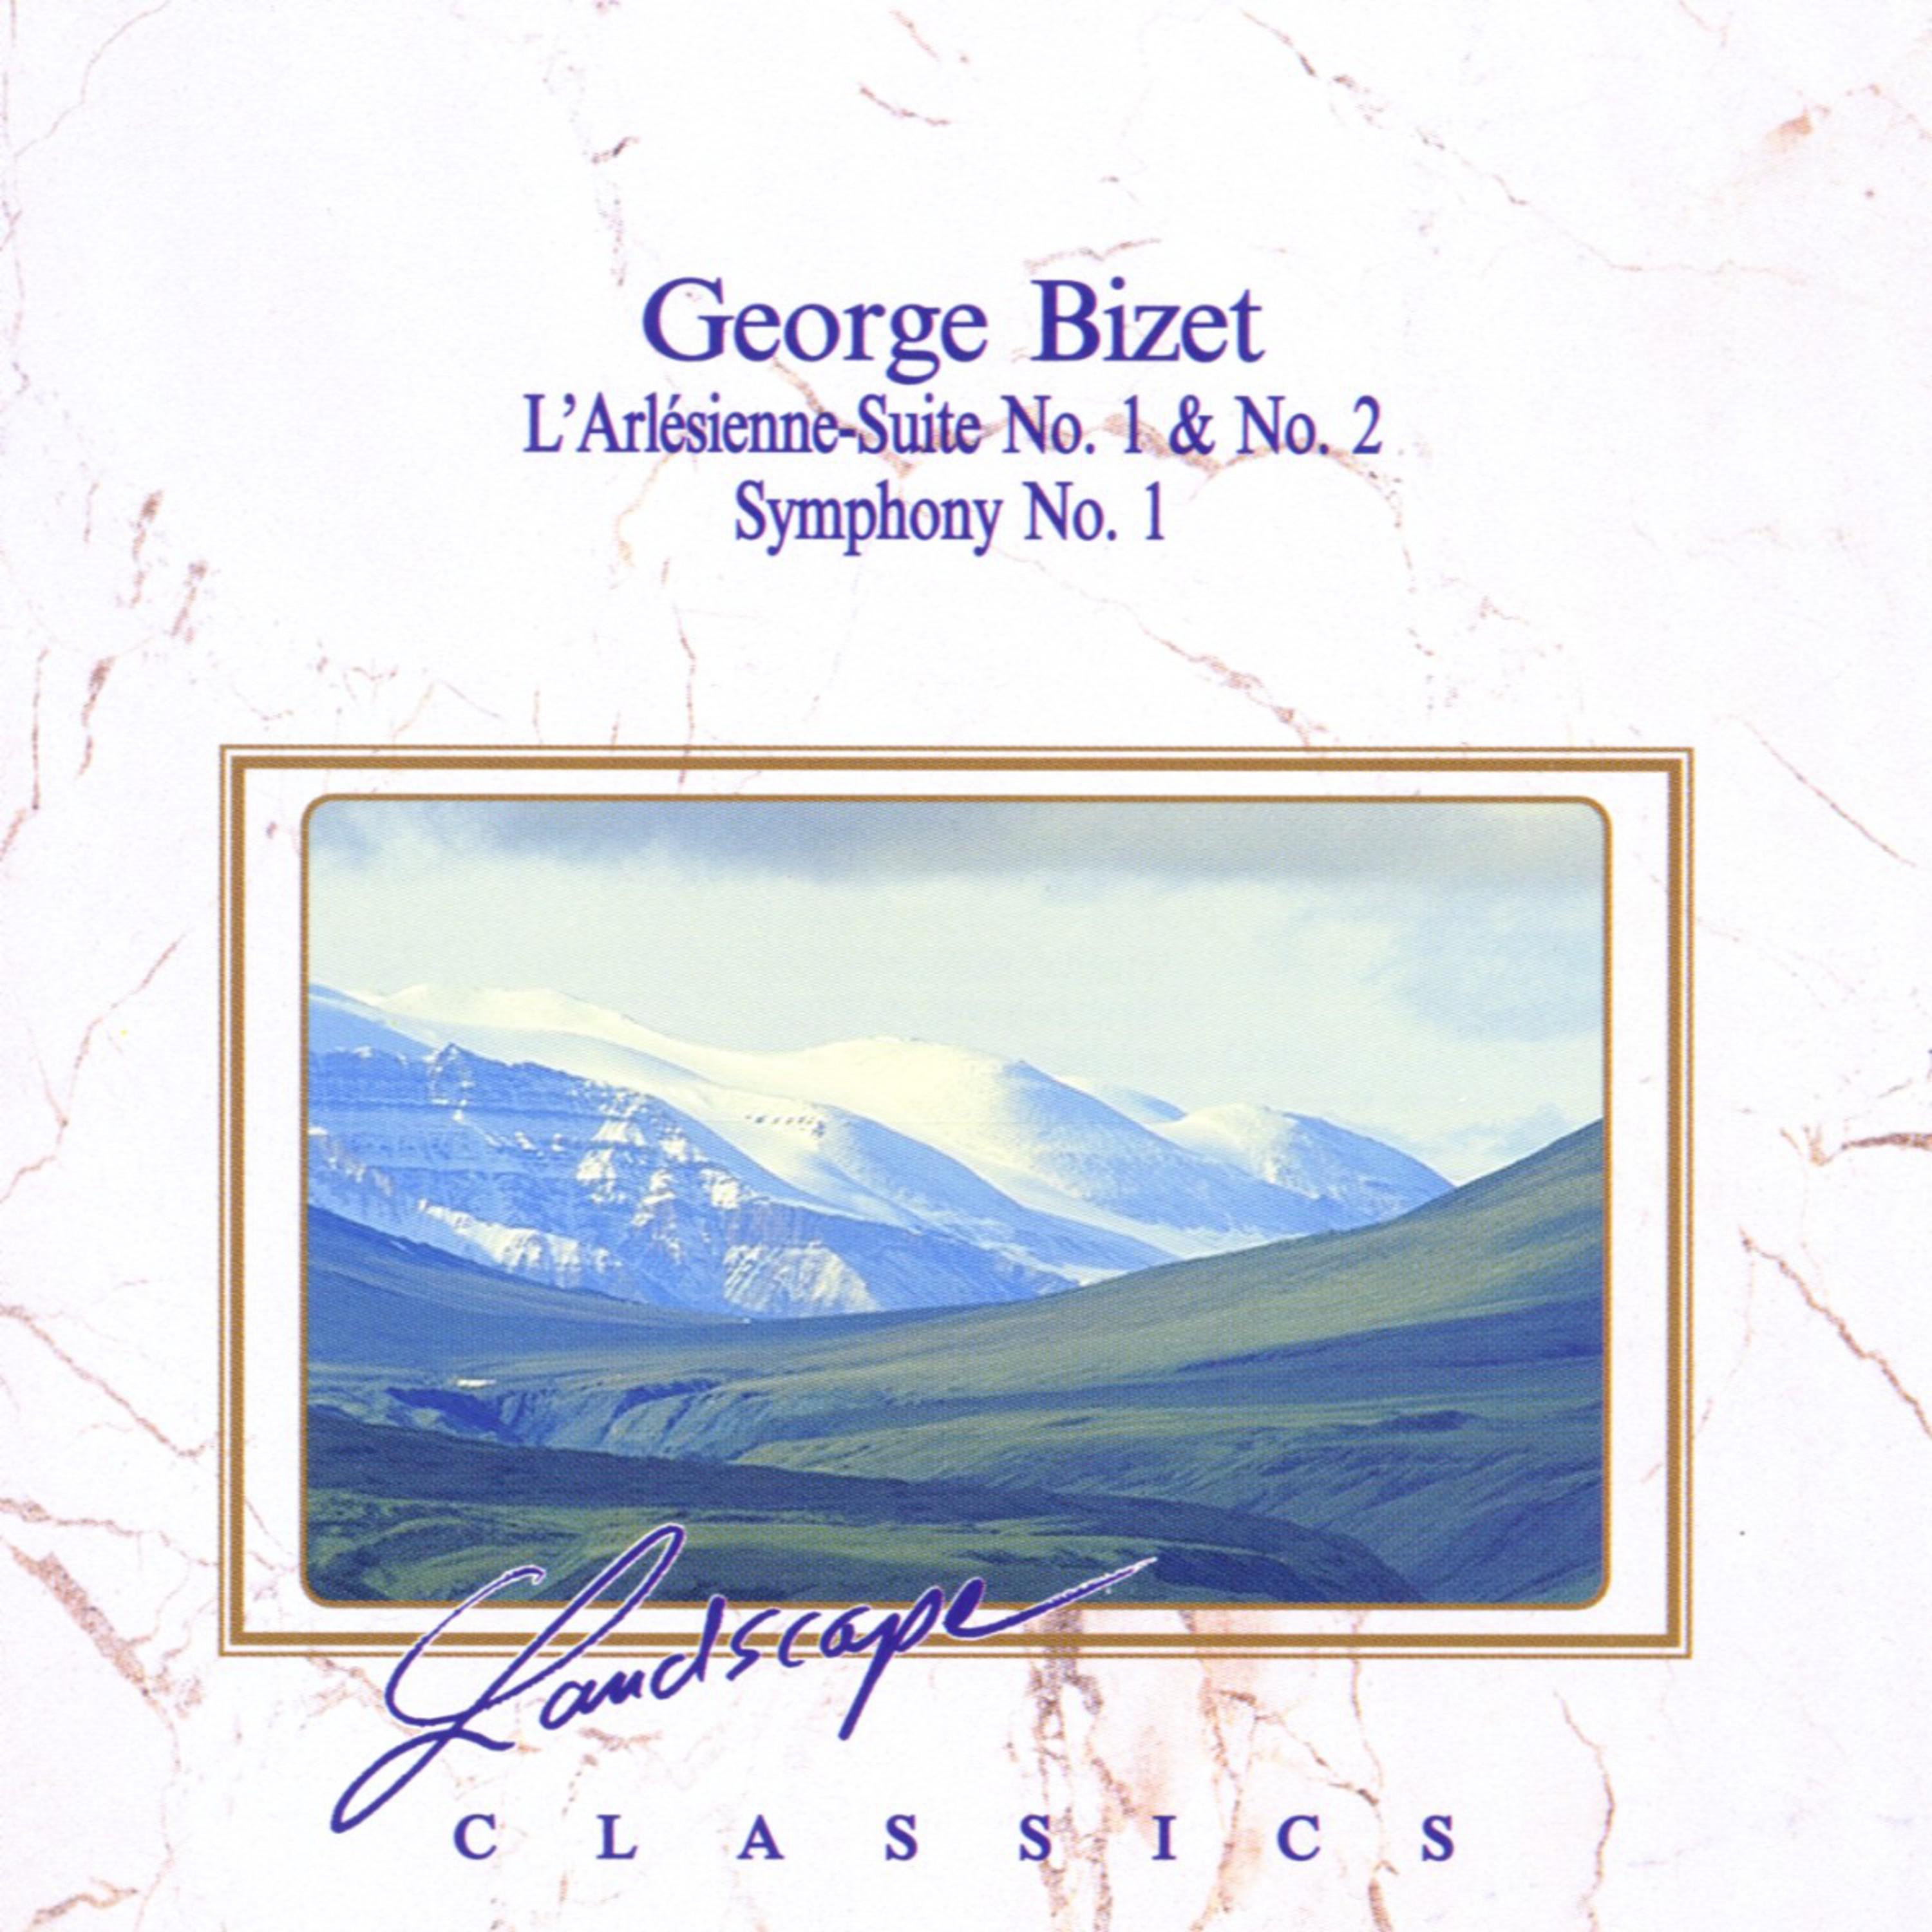 Georg Bizet: L'Alésienne-Suite No. 1, No. 2 & Symphony No. 1